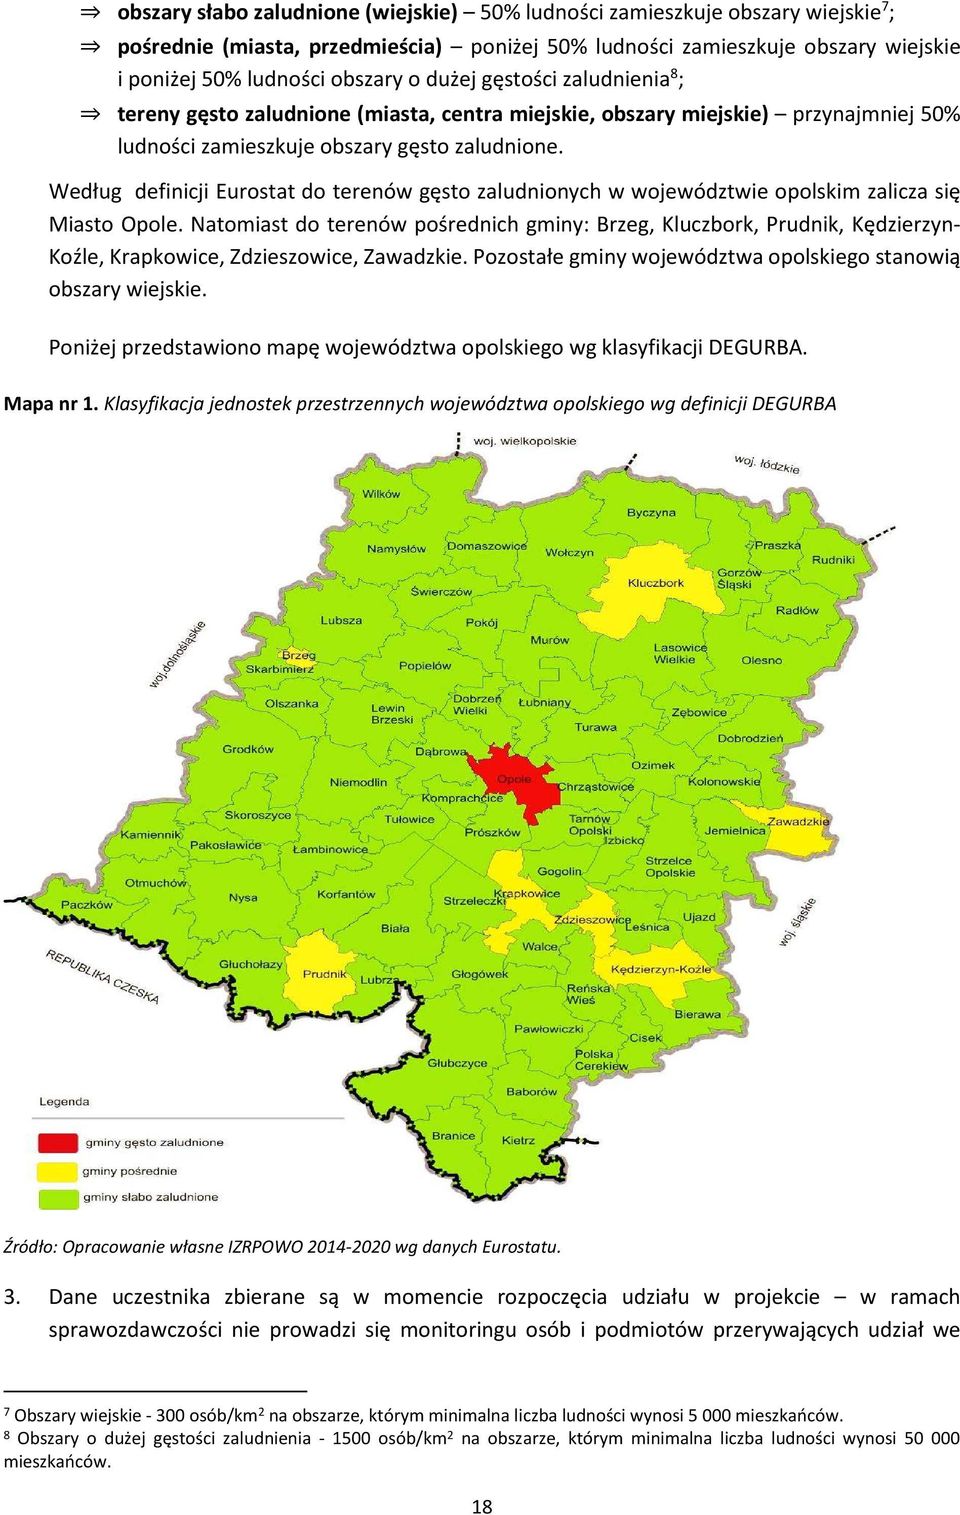 Według definicji Eurostat do terenów gęsto zaludnionych w województwie opolskim zalicza się Miasto Opole.